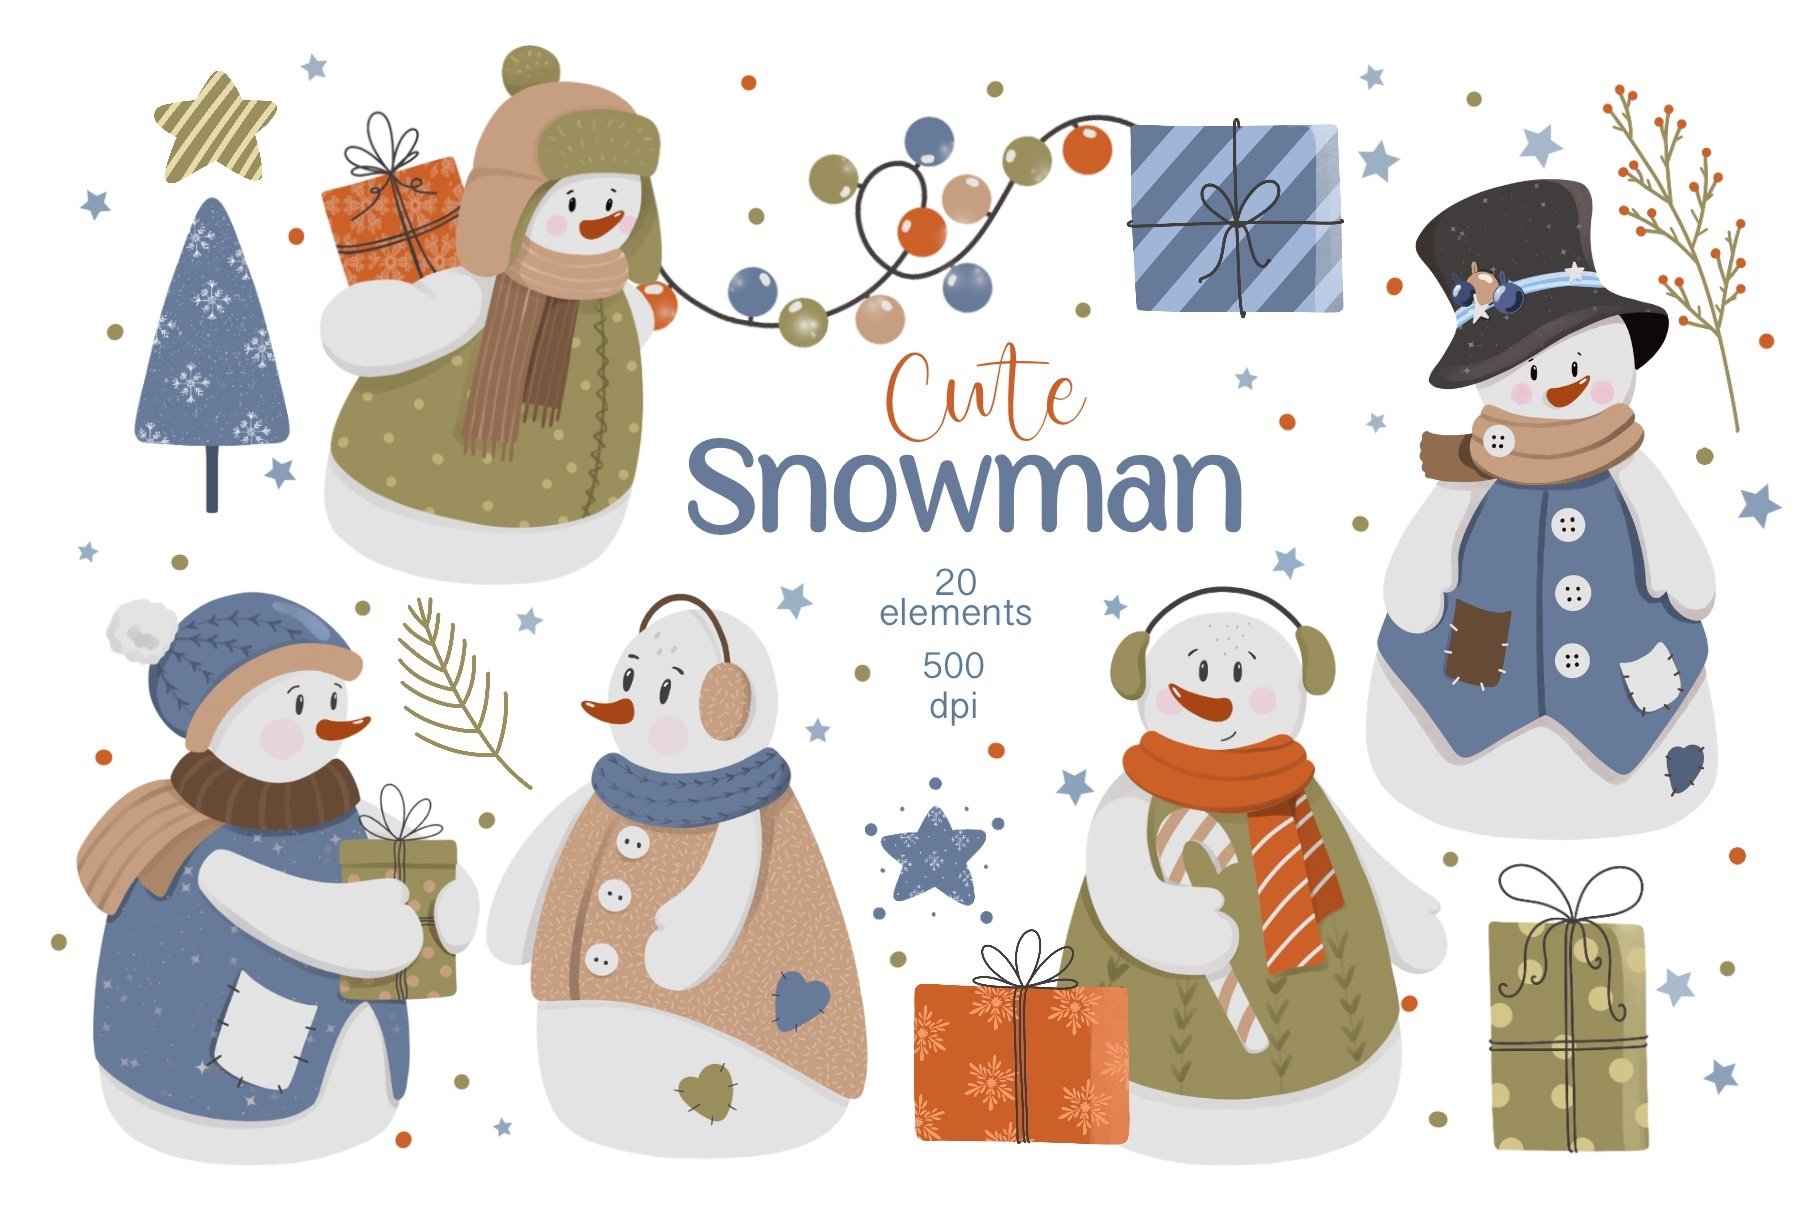 Build a Snowman - 4 Sets of Snowmen to Build - Clip Art